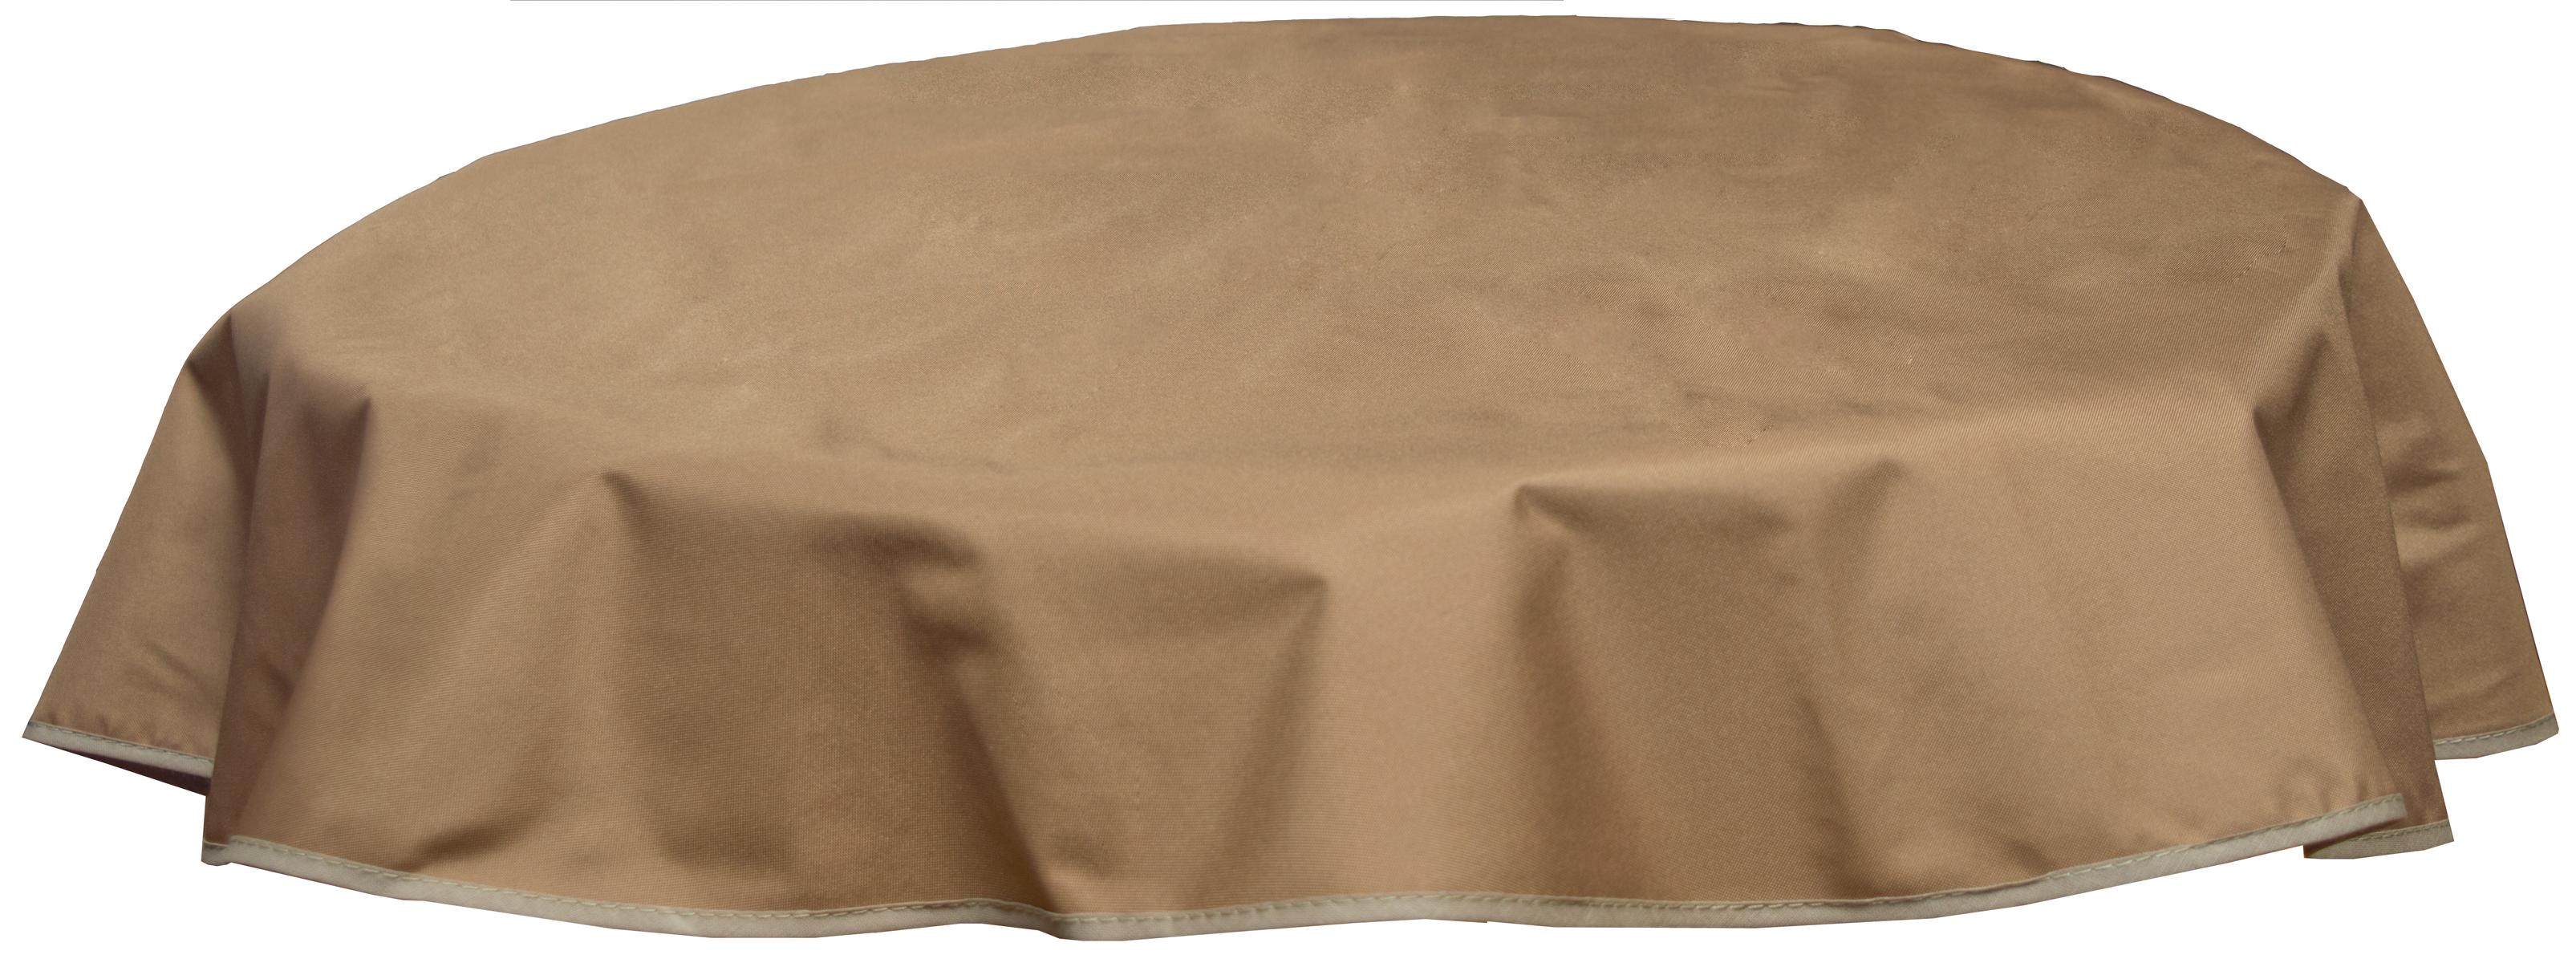 Runde Tischdecke 120cm wasserabweisend 100% Polyester in sand